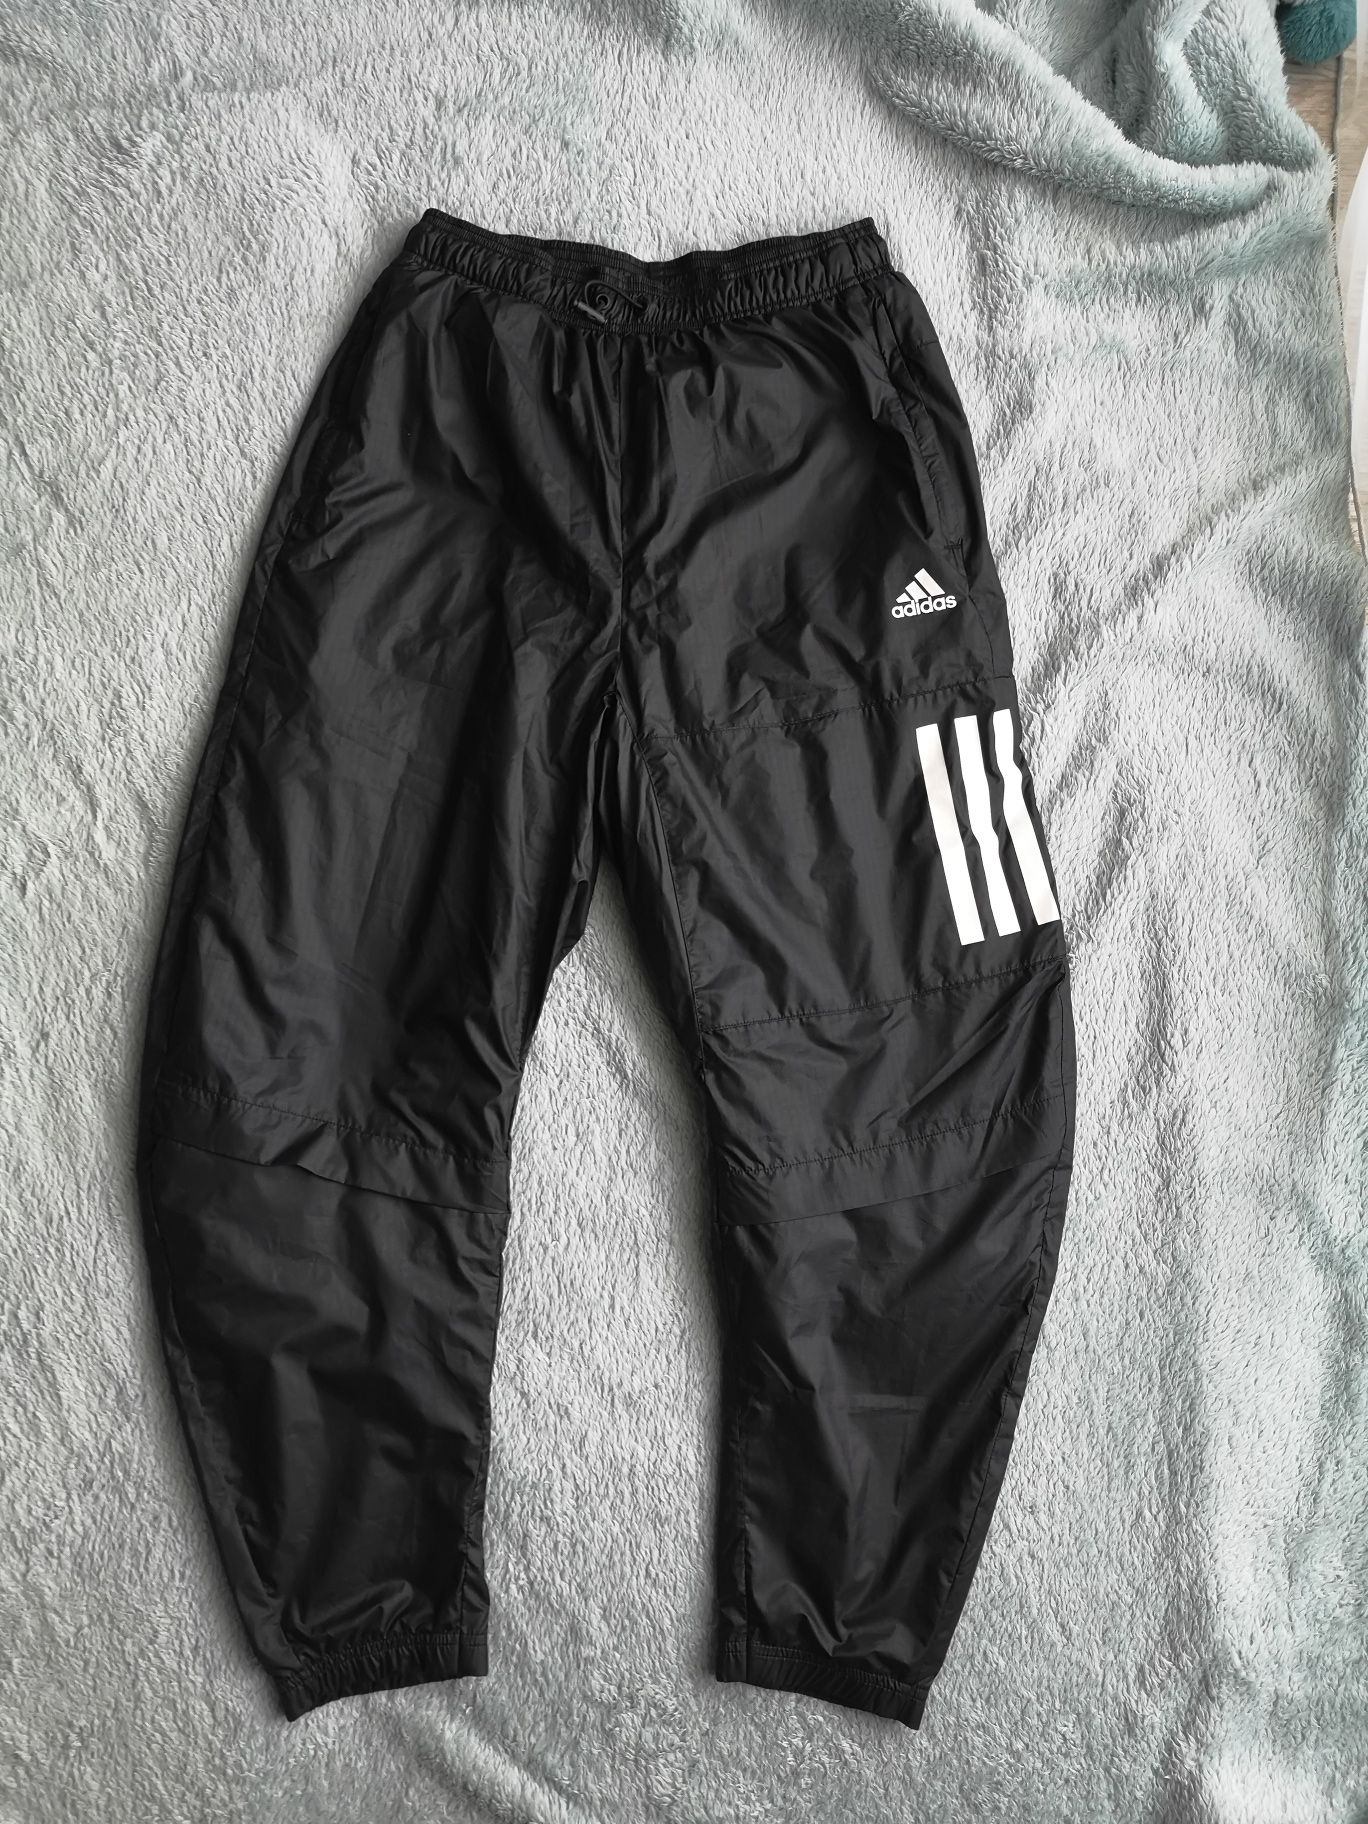 Adidas Performance czarne ocieplane spodnie dresowe typu jogger r. S